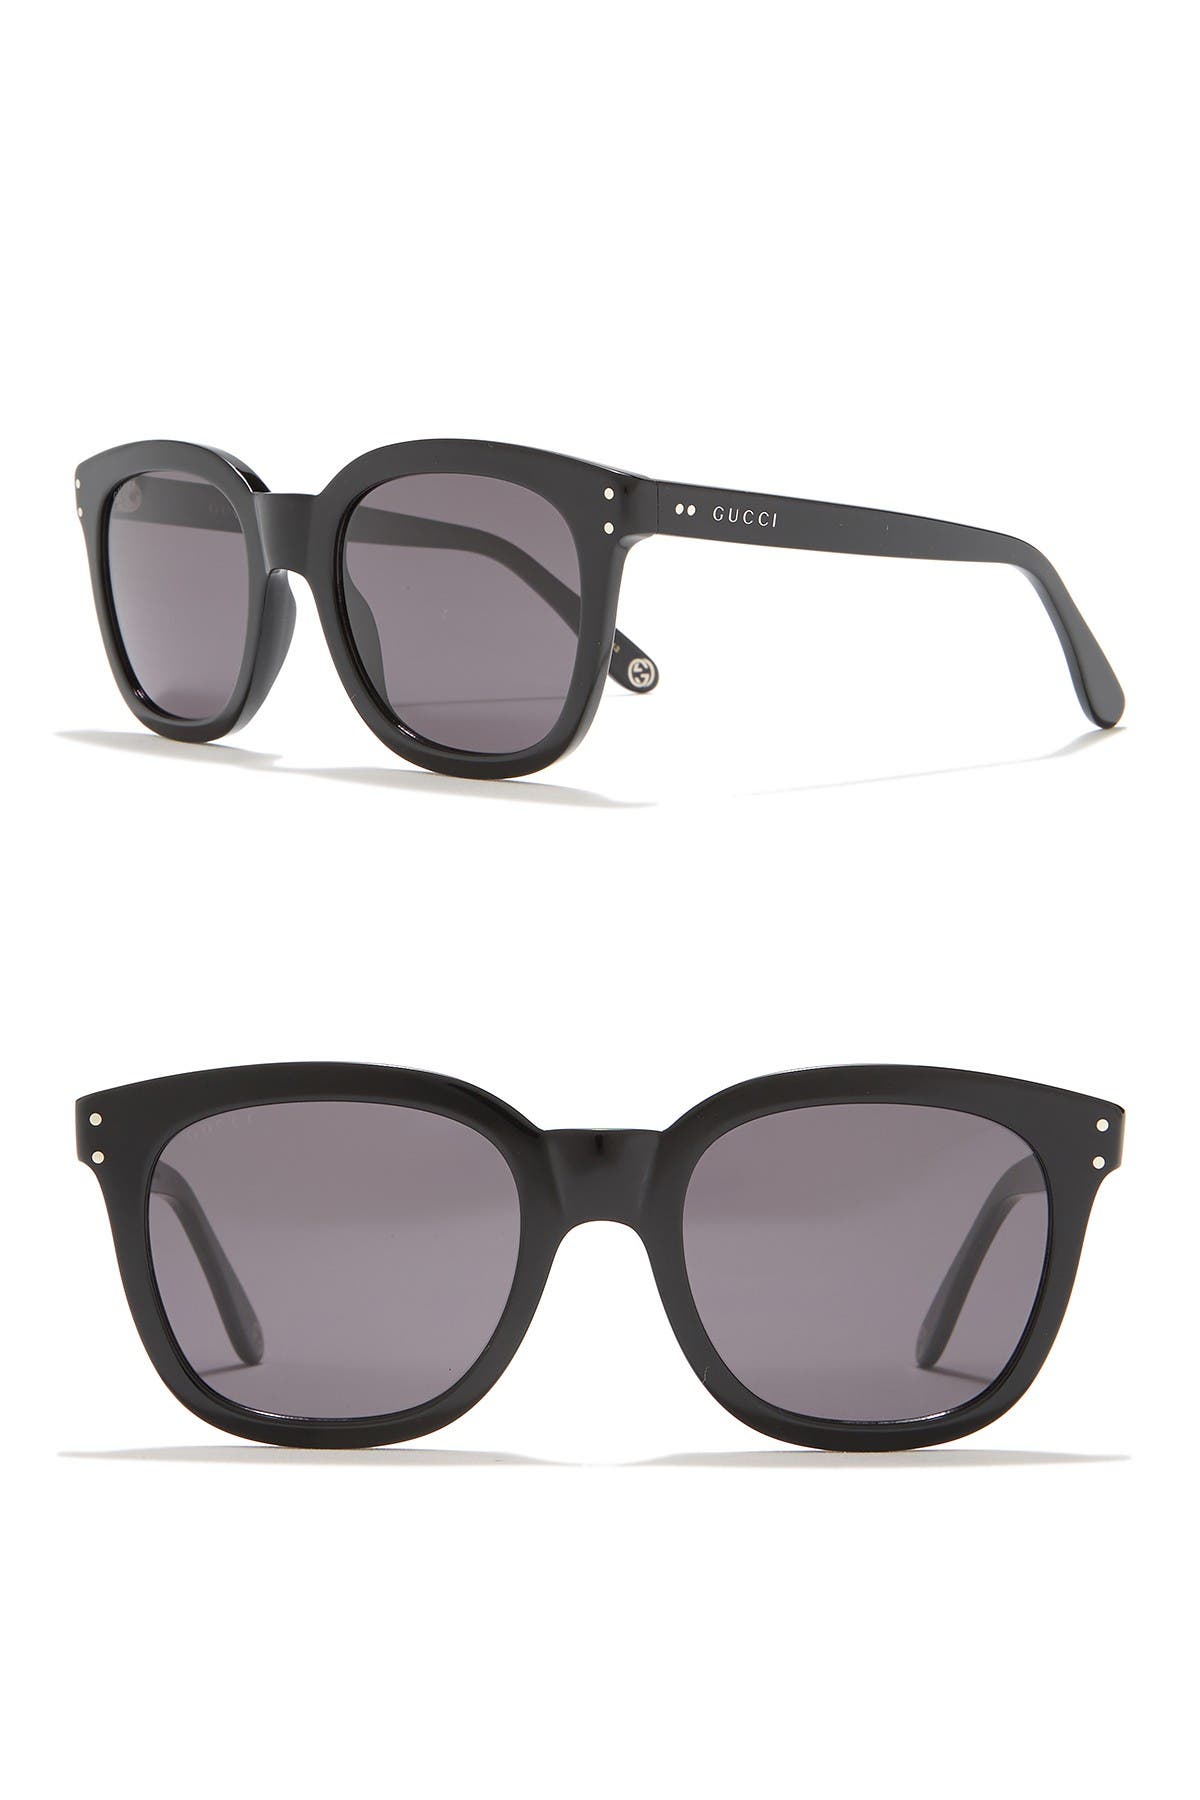 gucci 50mm square sunglasses